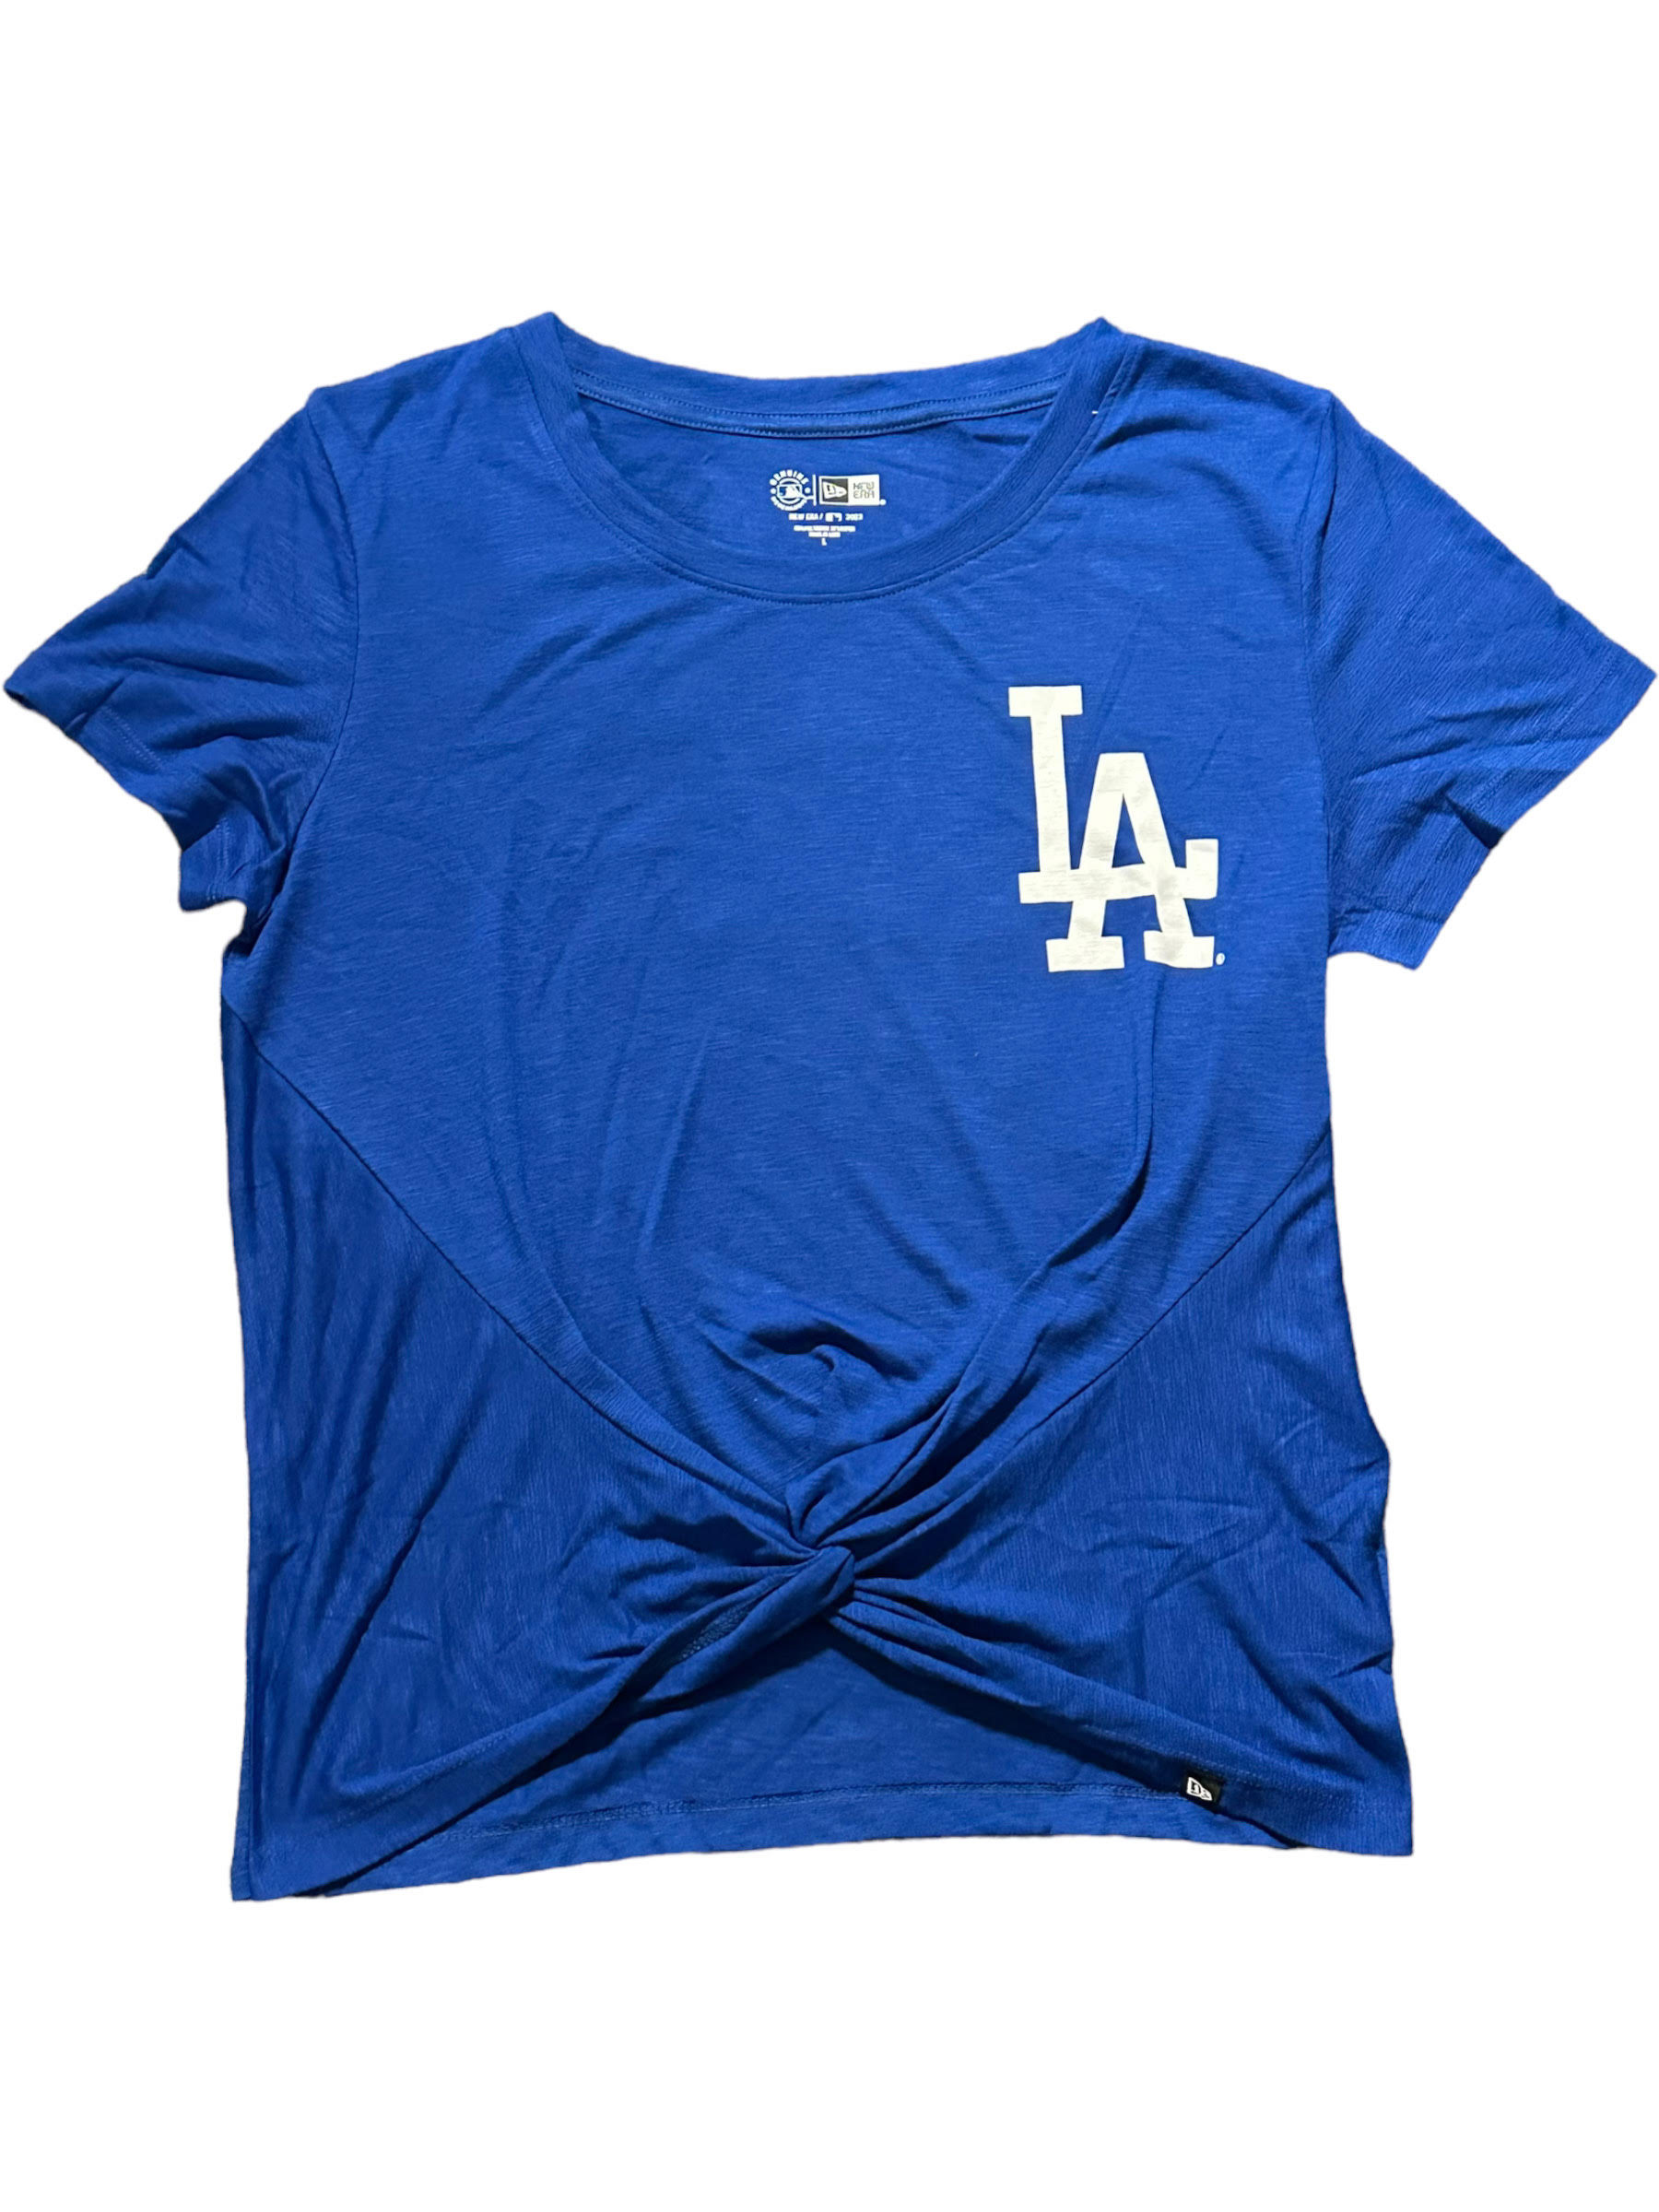 Dodgers Shirt Women 